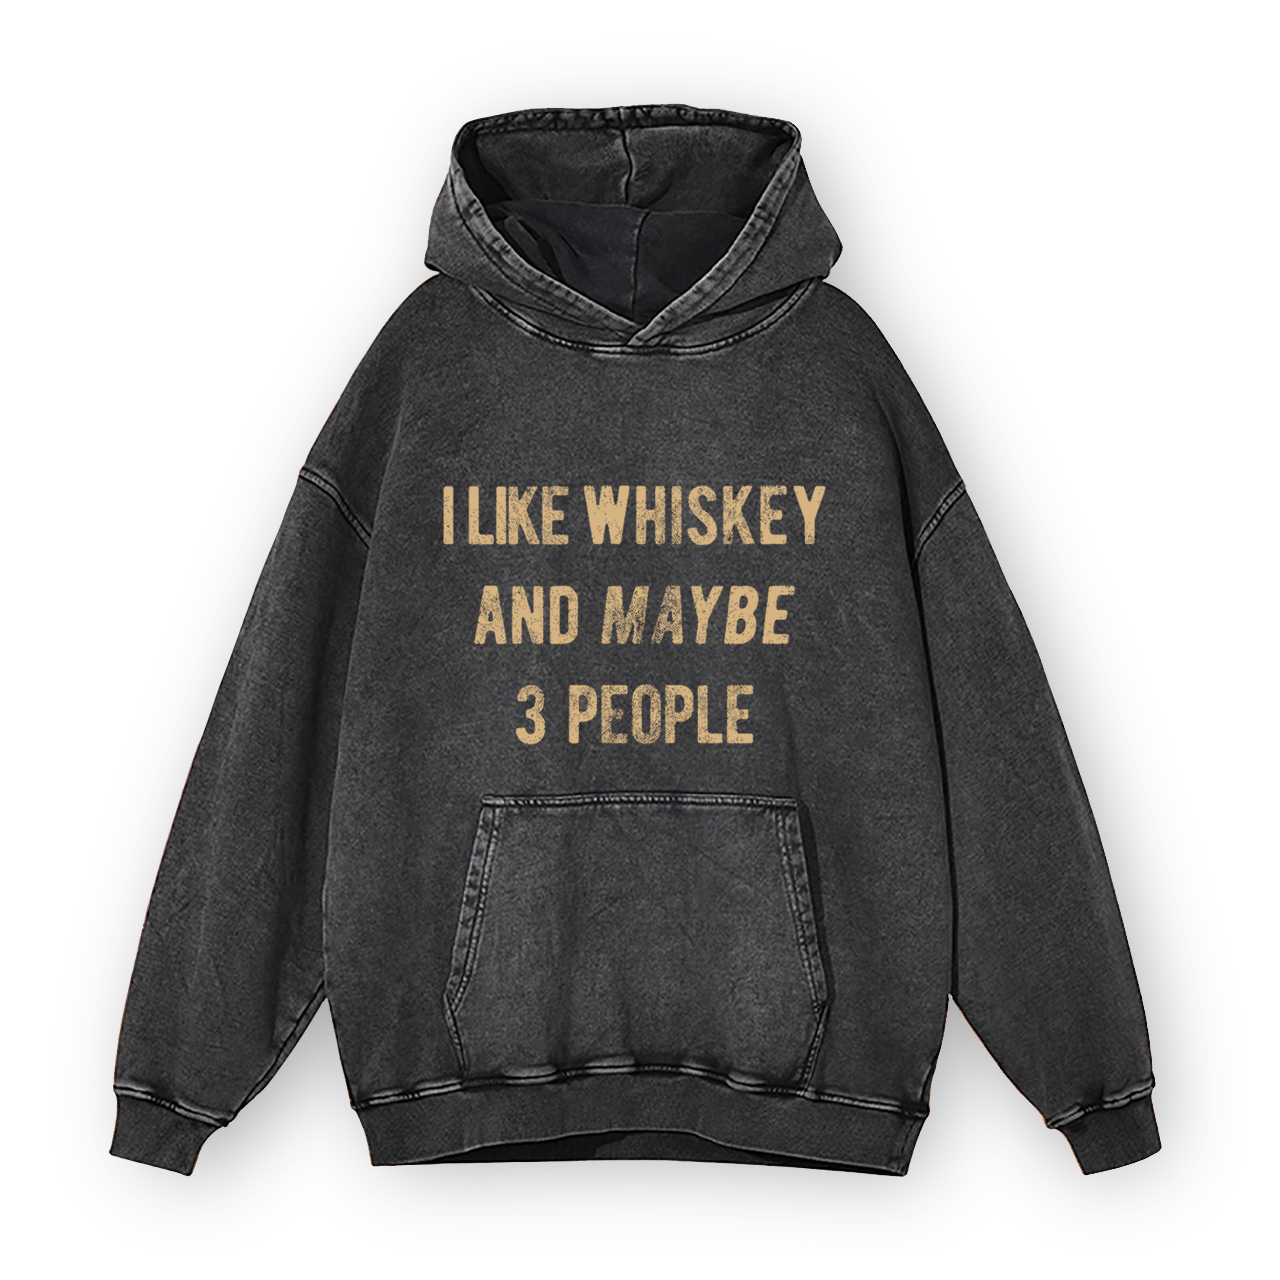 I Like Whiskey And Maybe 3 People Garment-Dye Hoodies